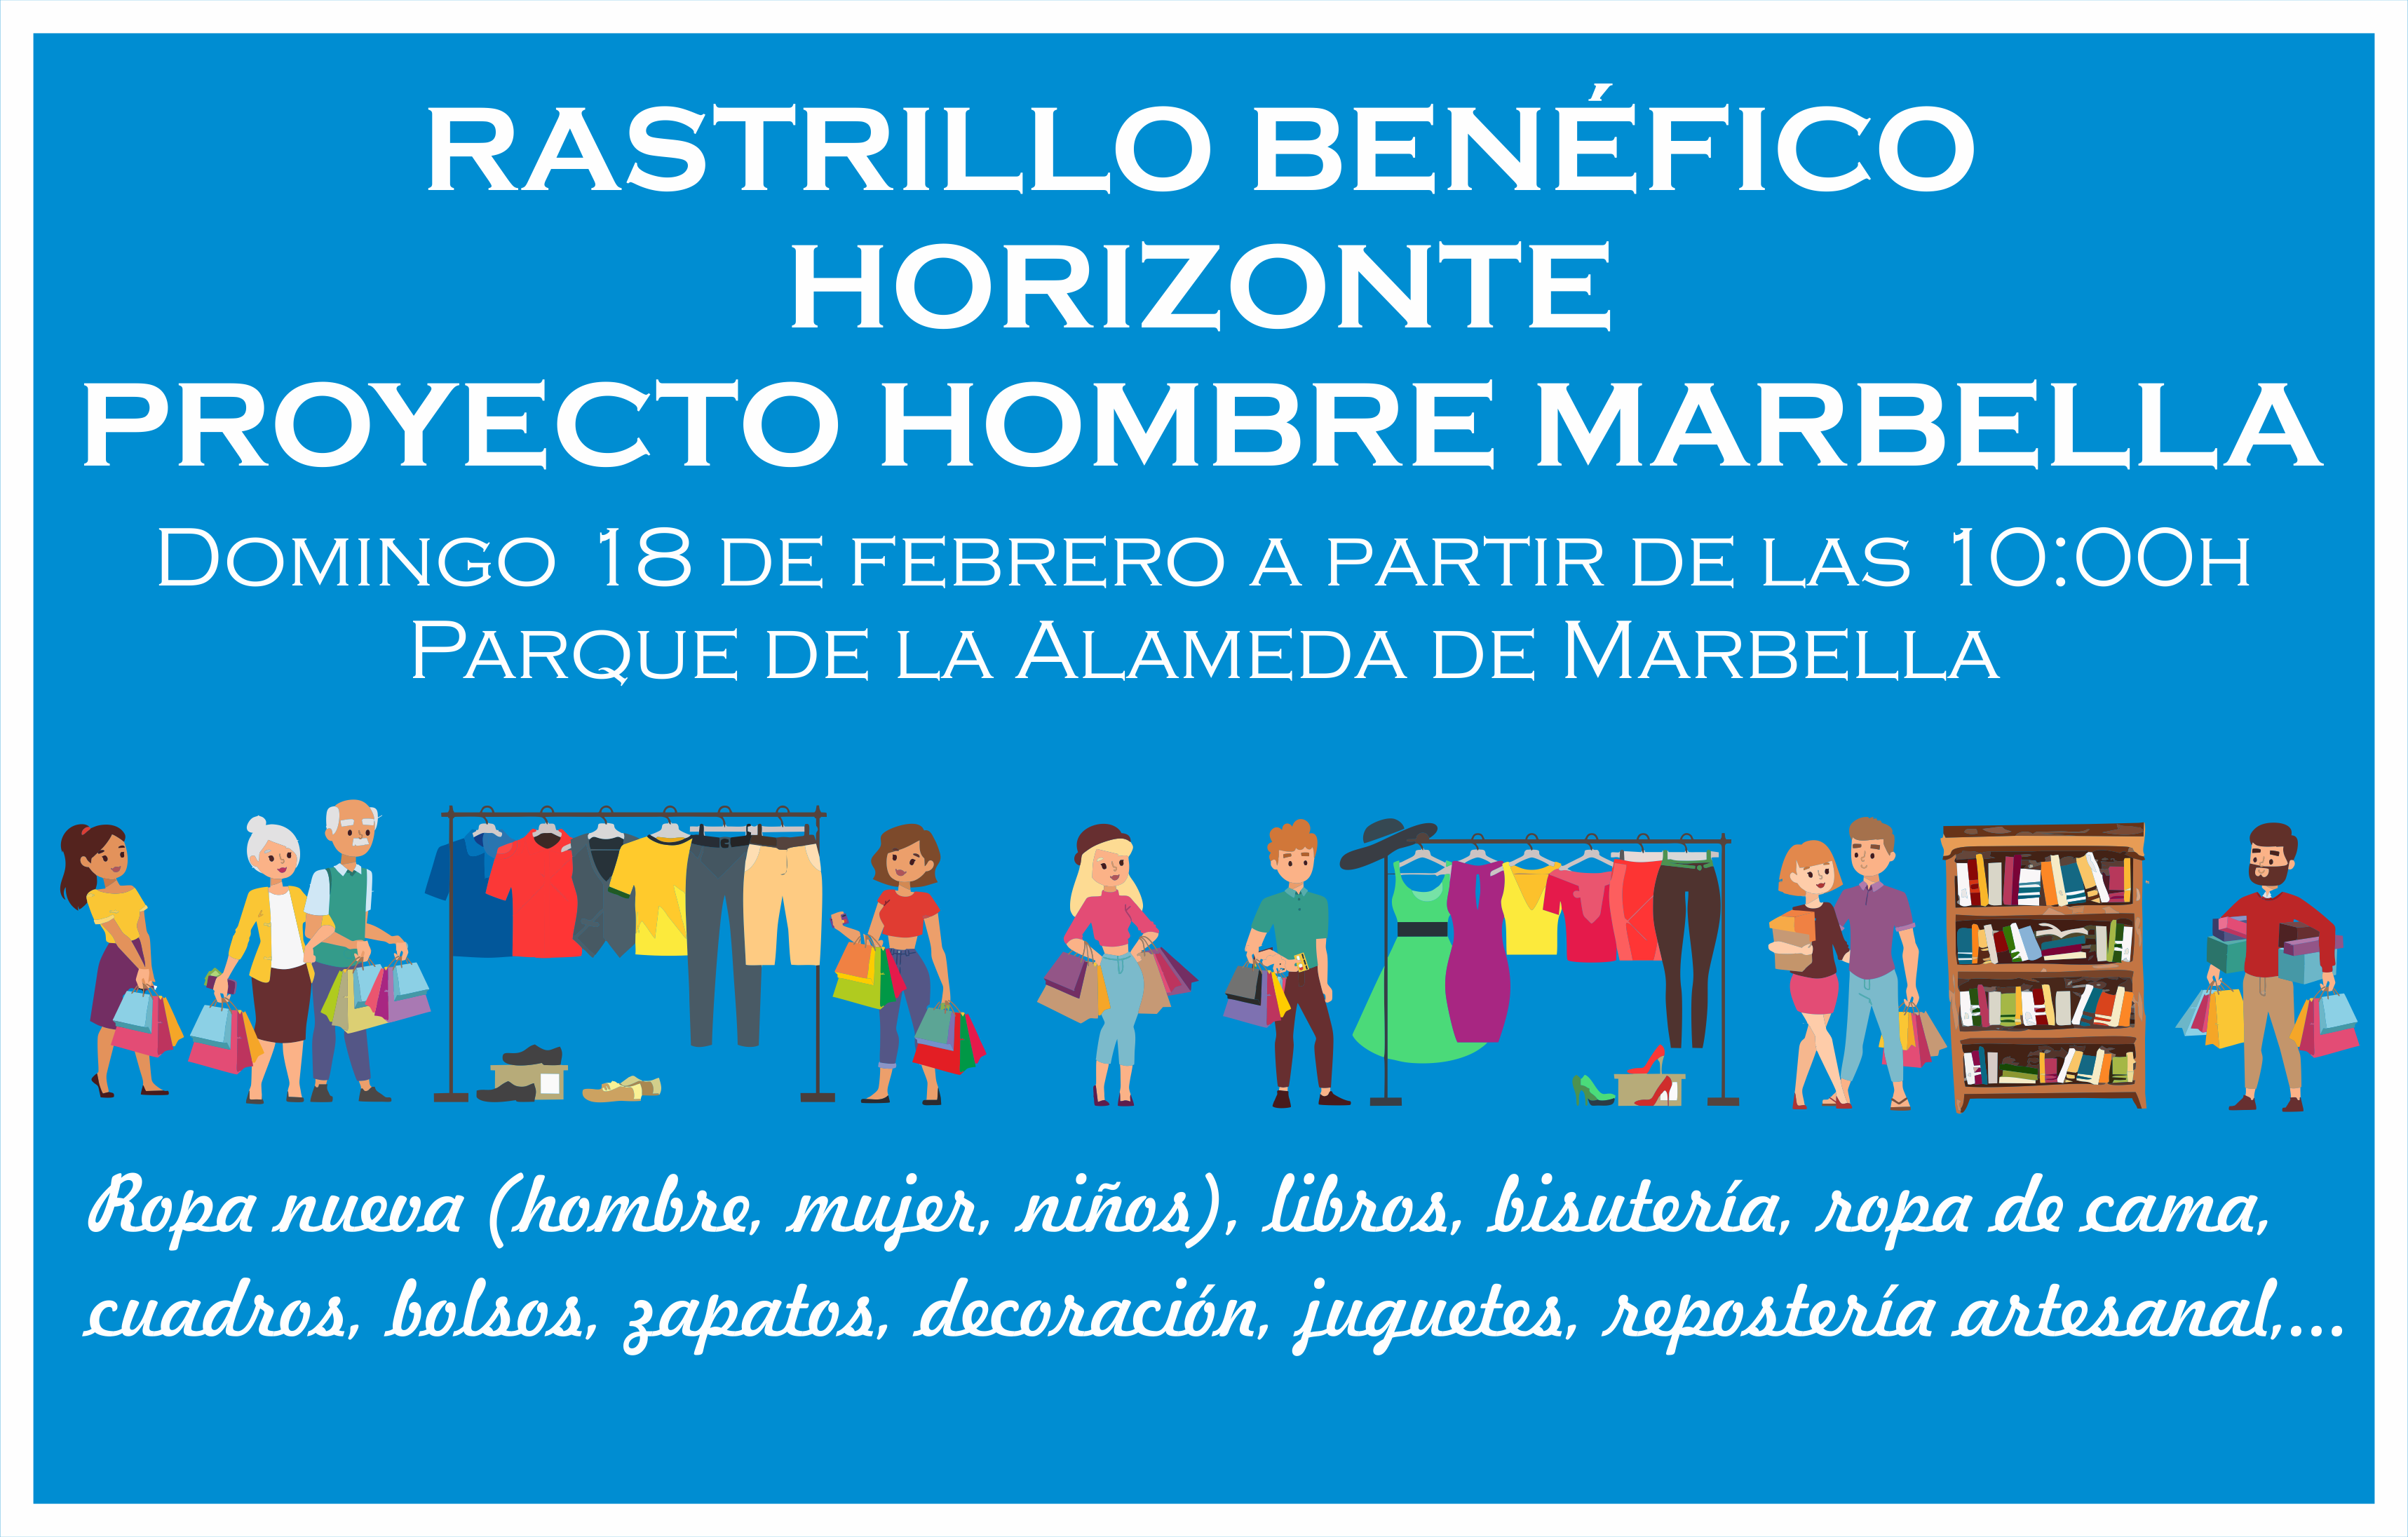 Aplazado hasta el domingo 18 de febrero el Rastrillo Benéfico de Horizonte Proyecto Hombre Marbella